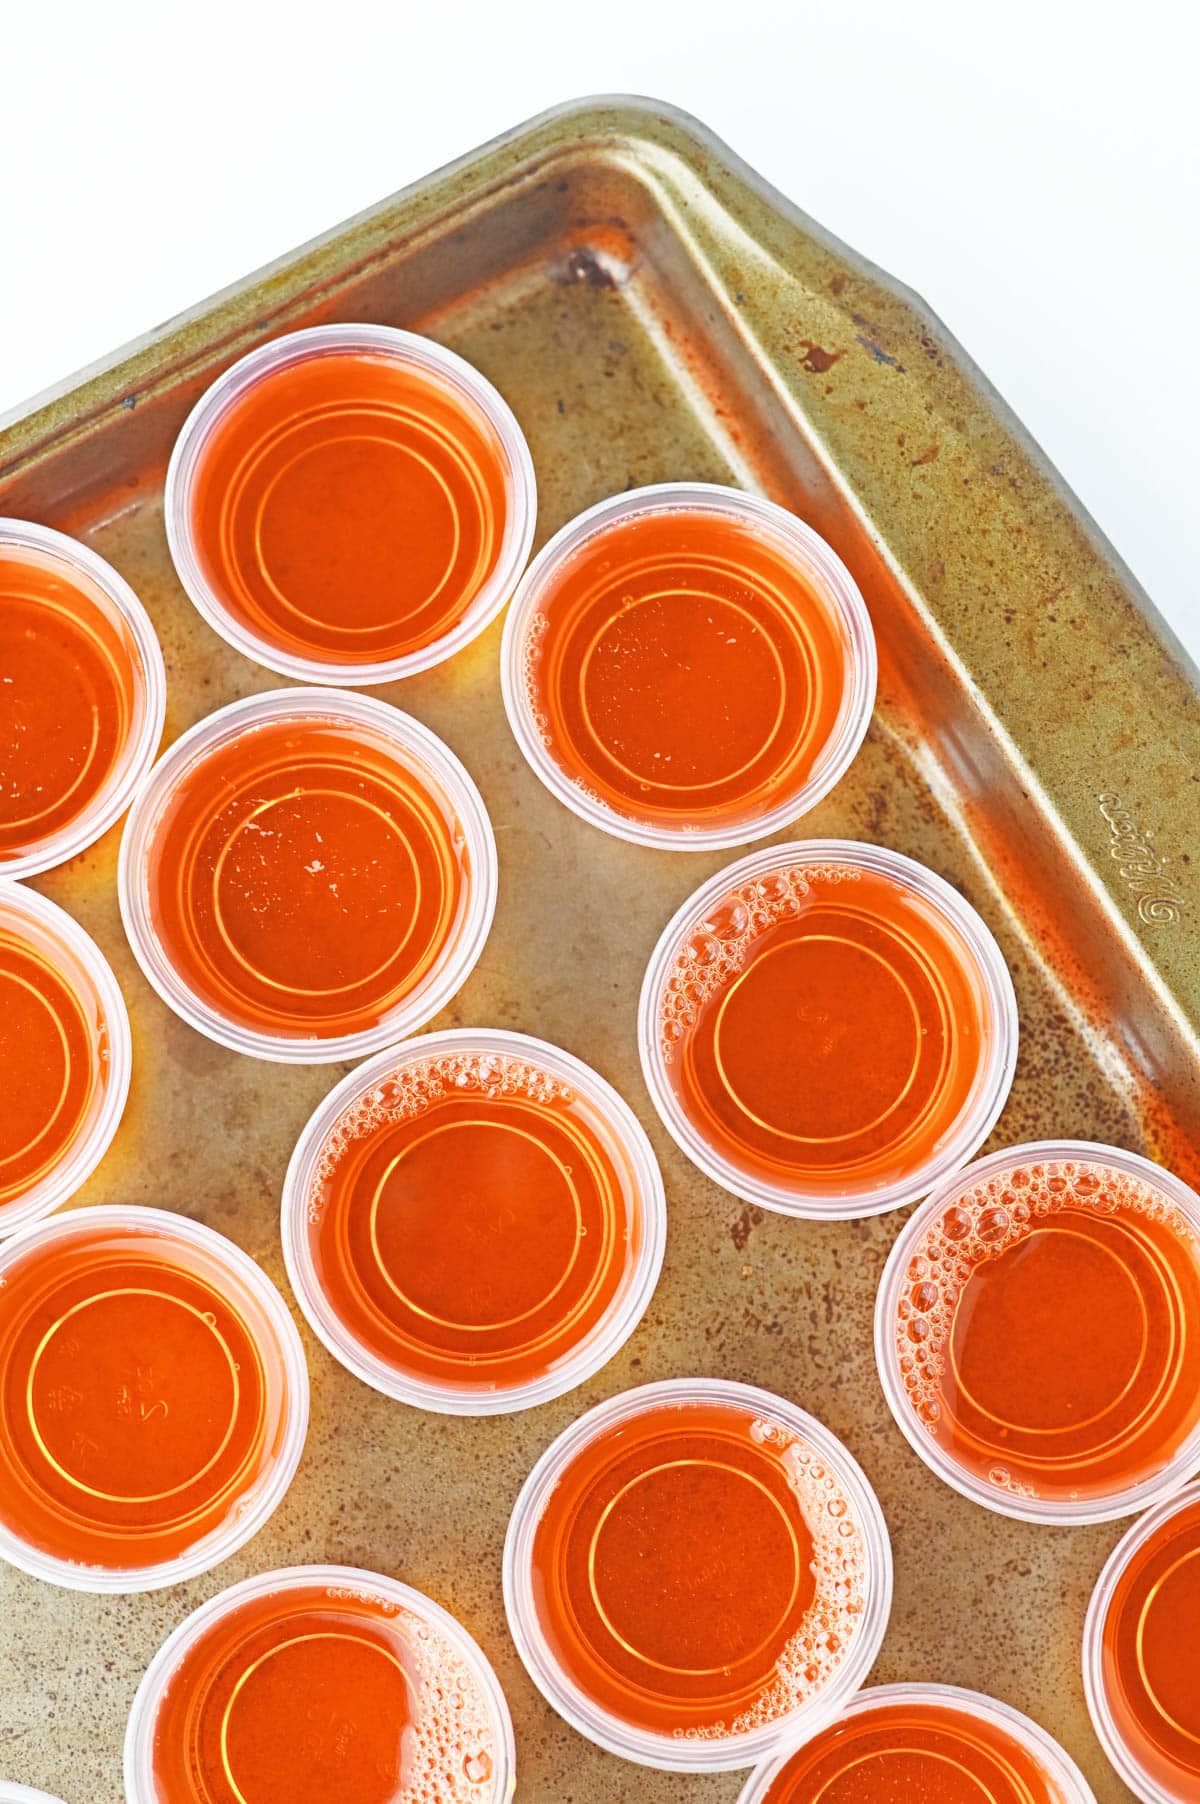 Plastic jello cups filled with orange jello mix